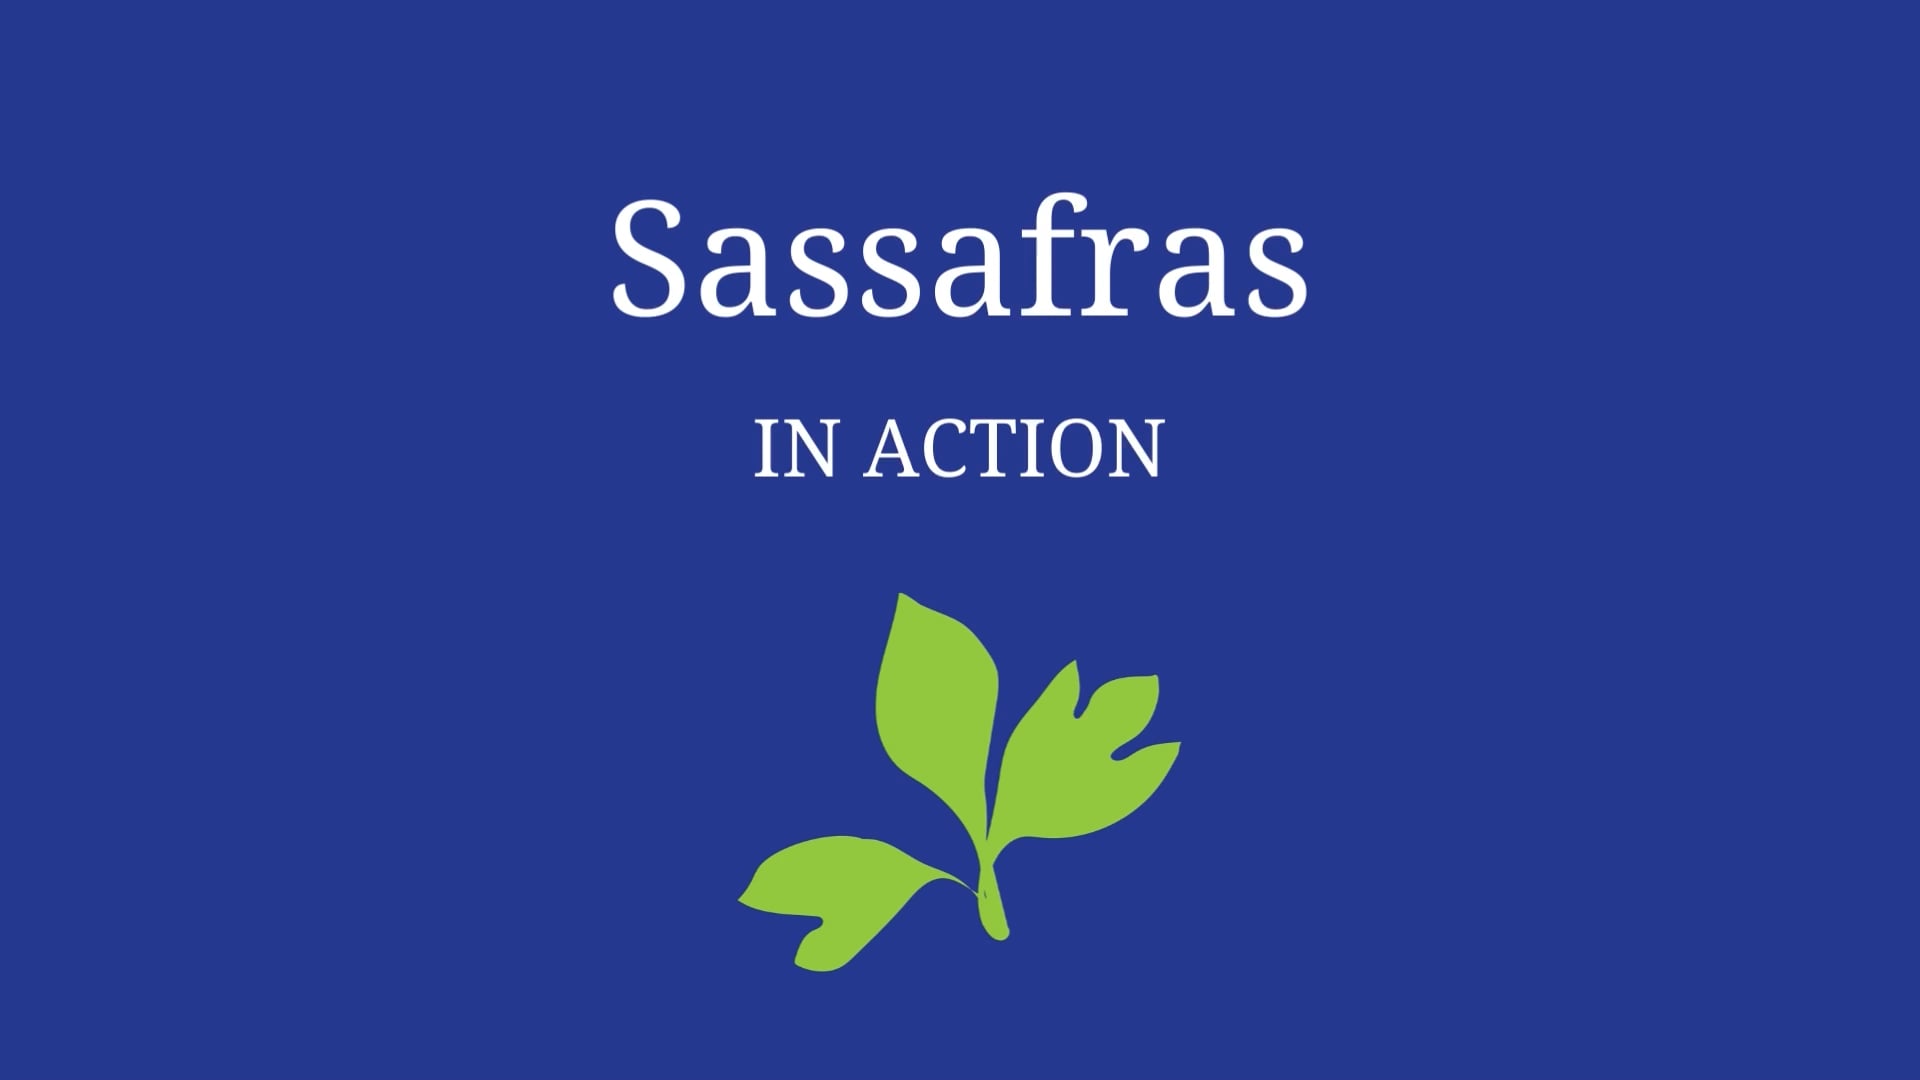 Sassafras in Action